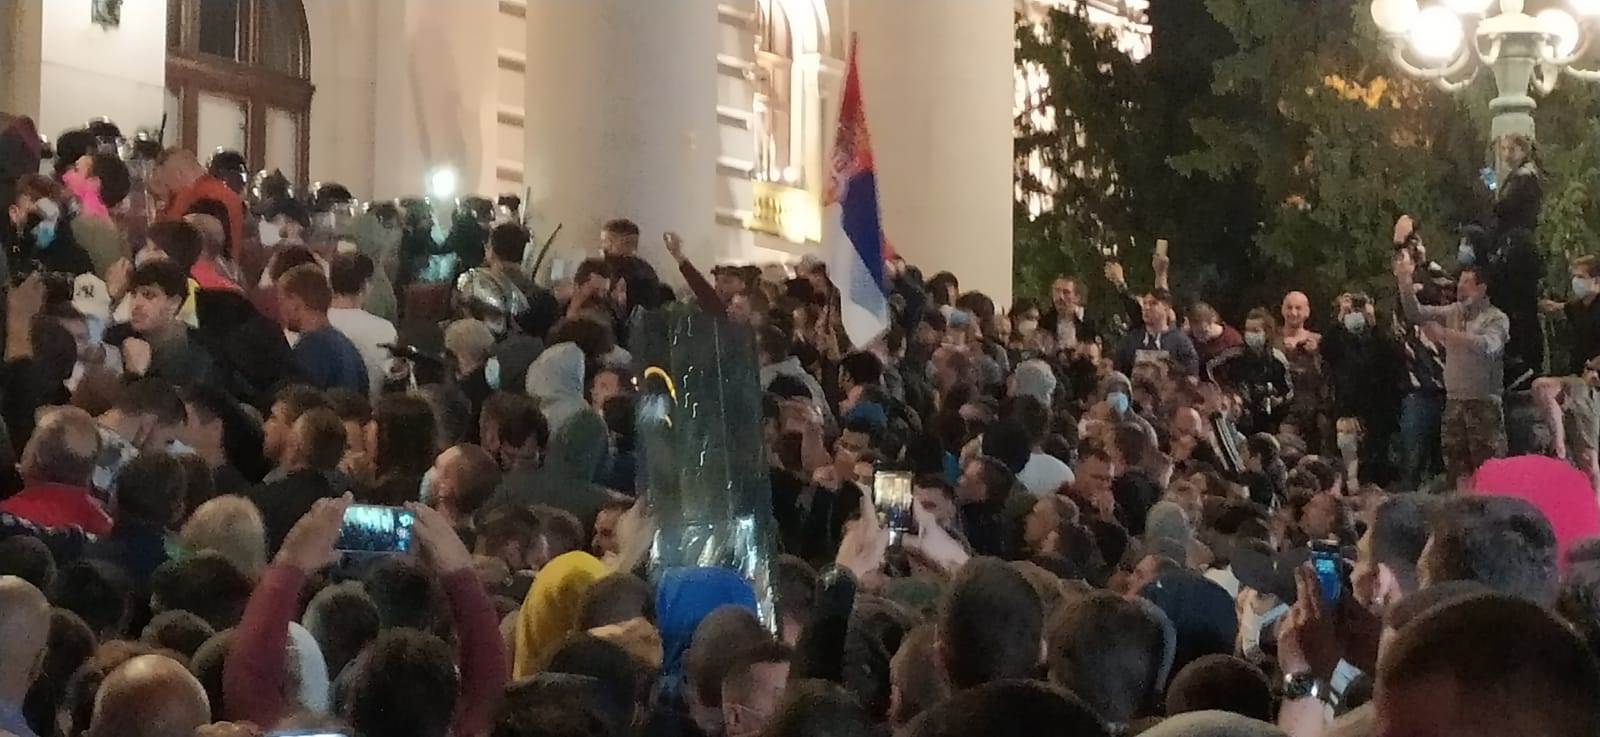  najnovija vest Dačić protesti demonstarcije skupština srbije incidenti sukobi policija 